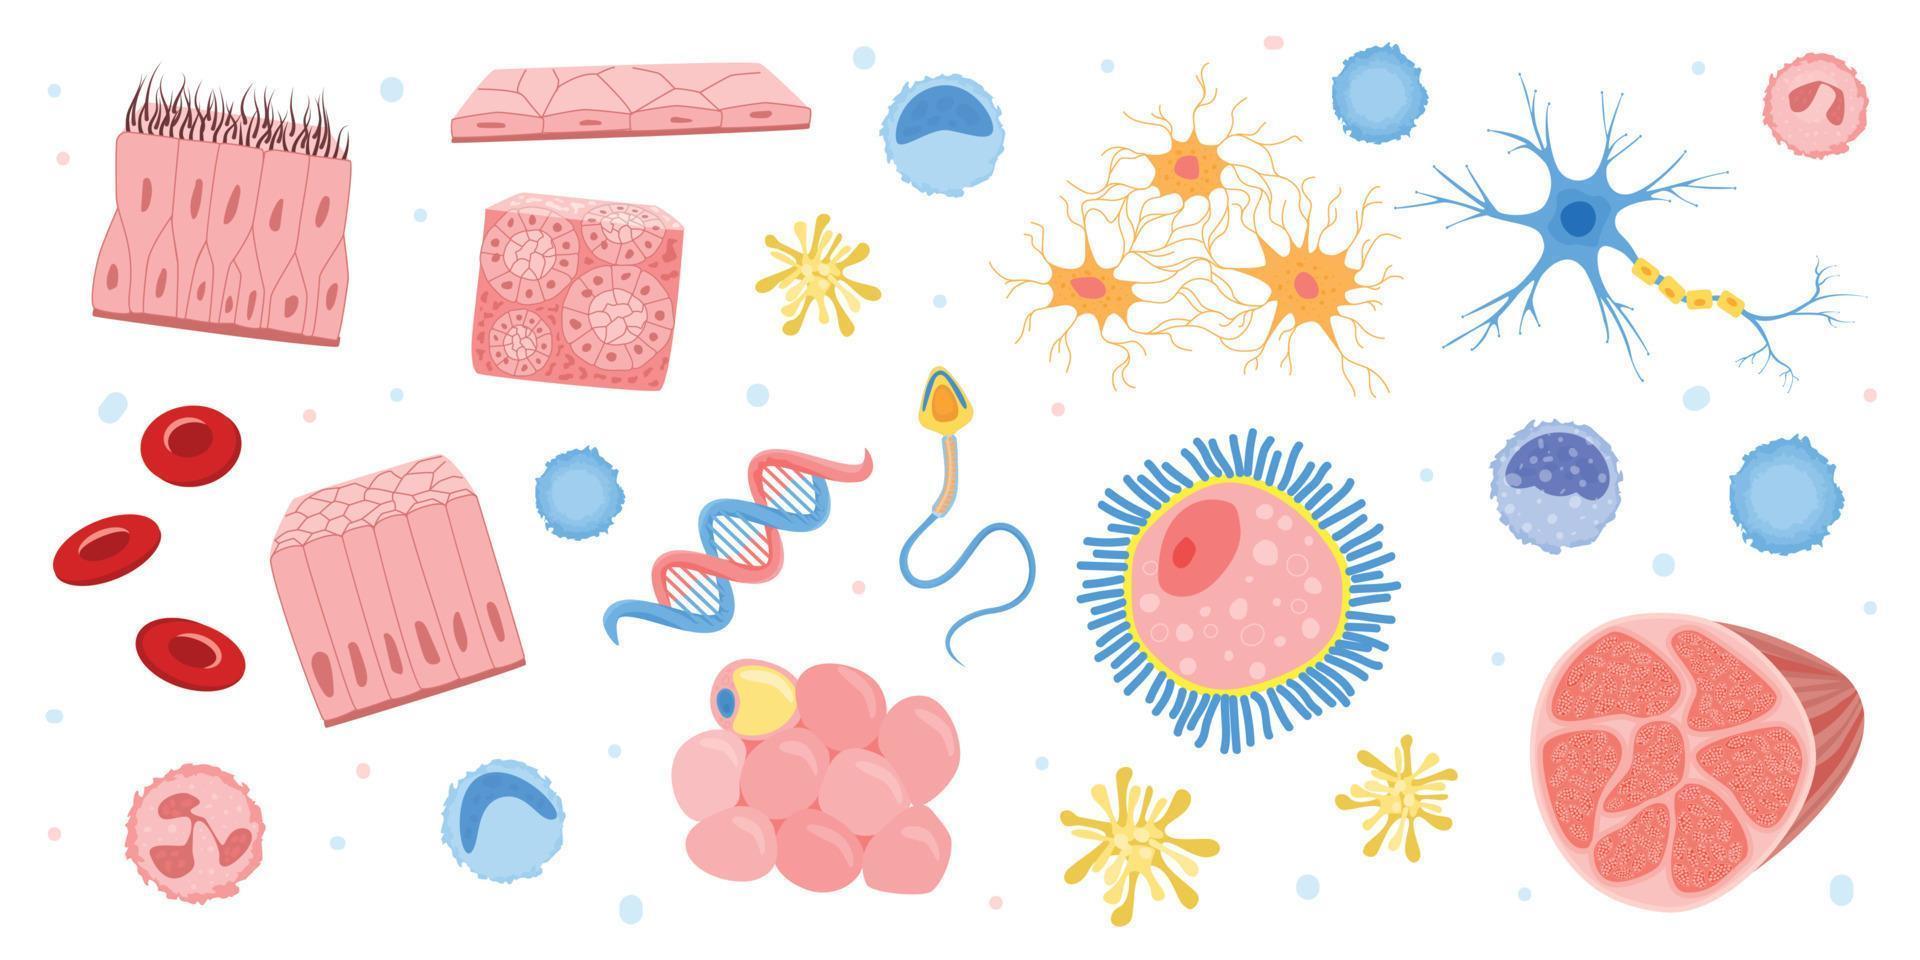 Human Cells Bacteria Set vector